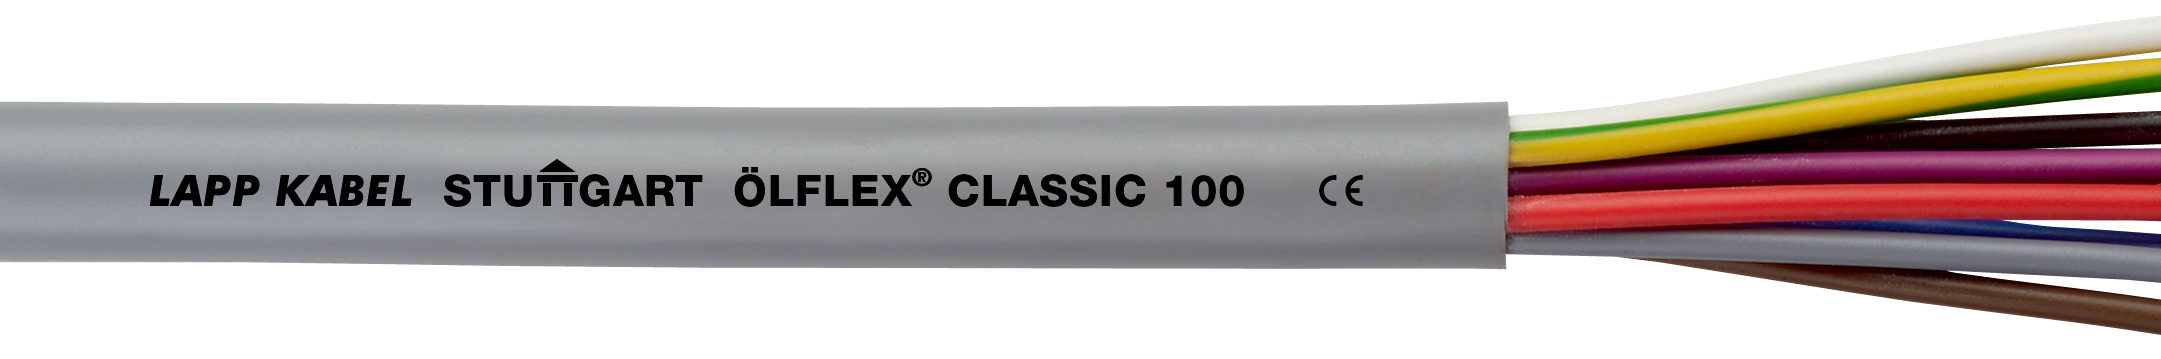 LAPP ÖLFLEX CLASSIC 100 5G 6 mm²